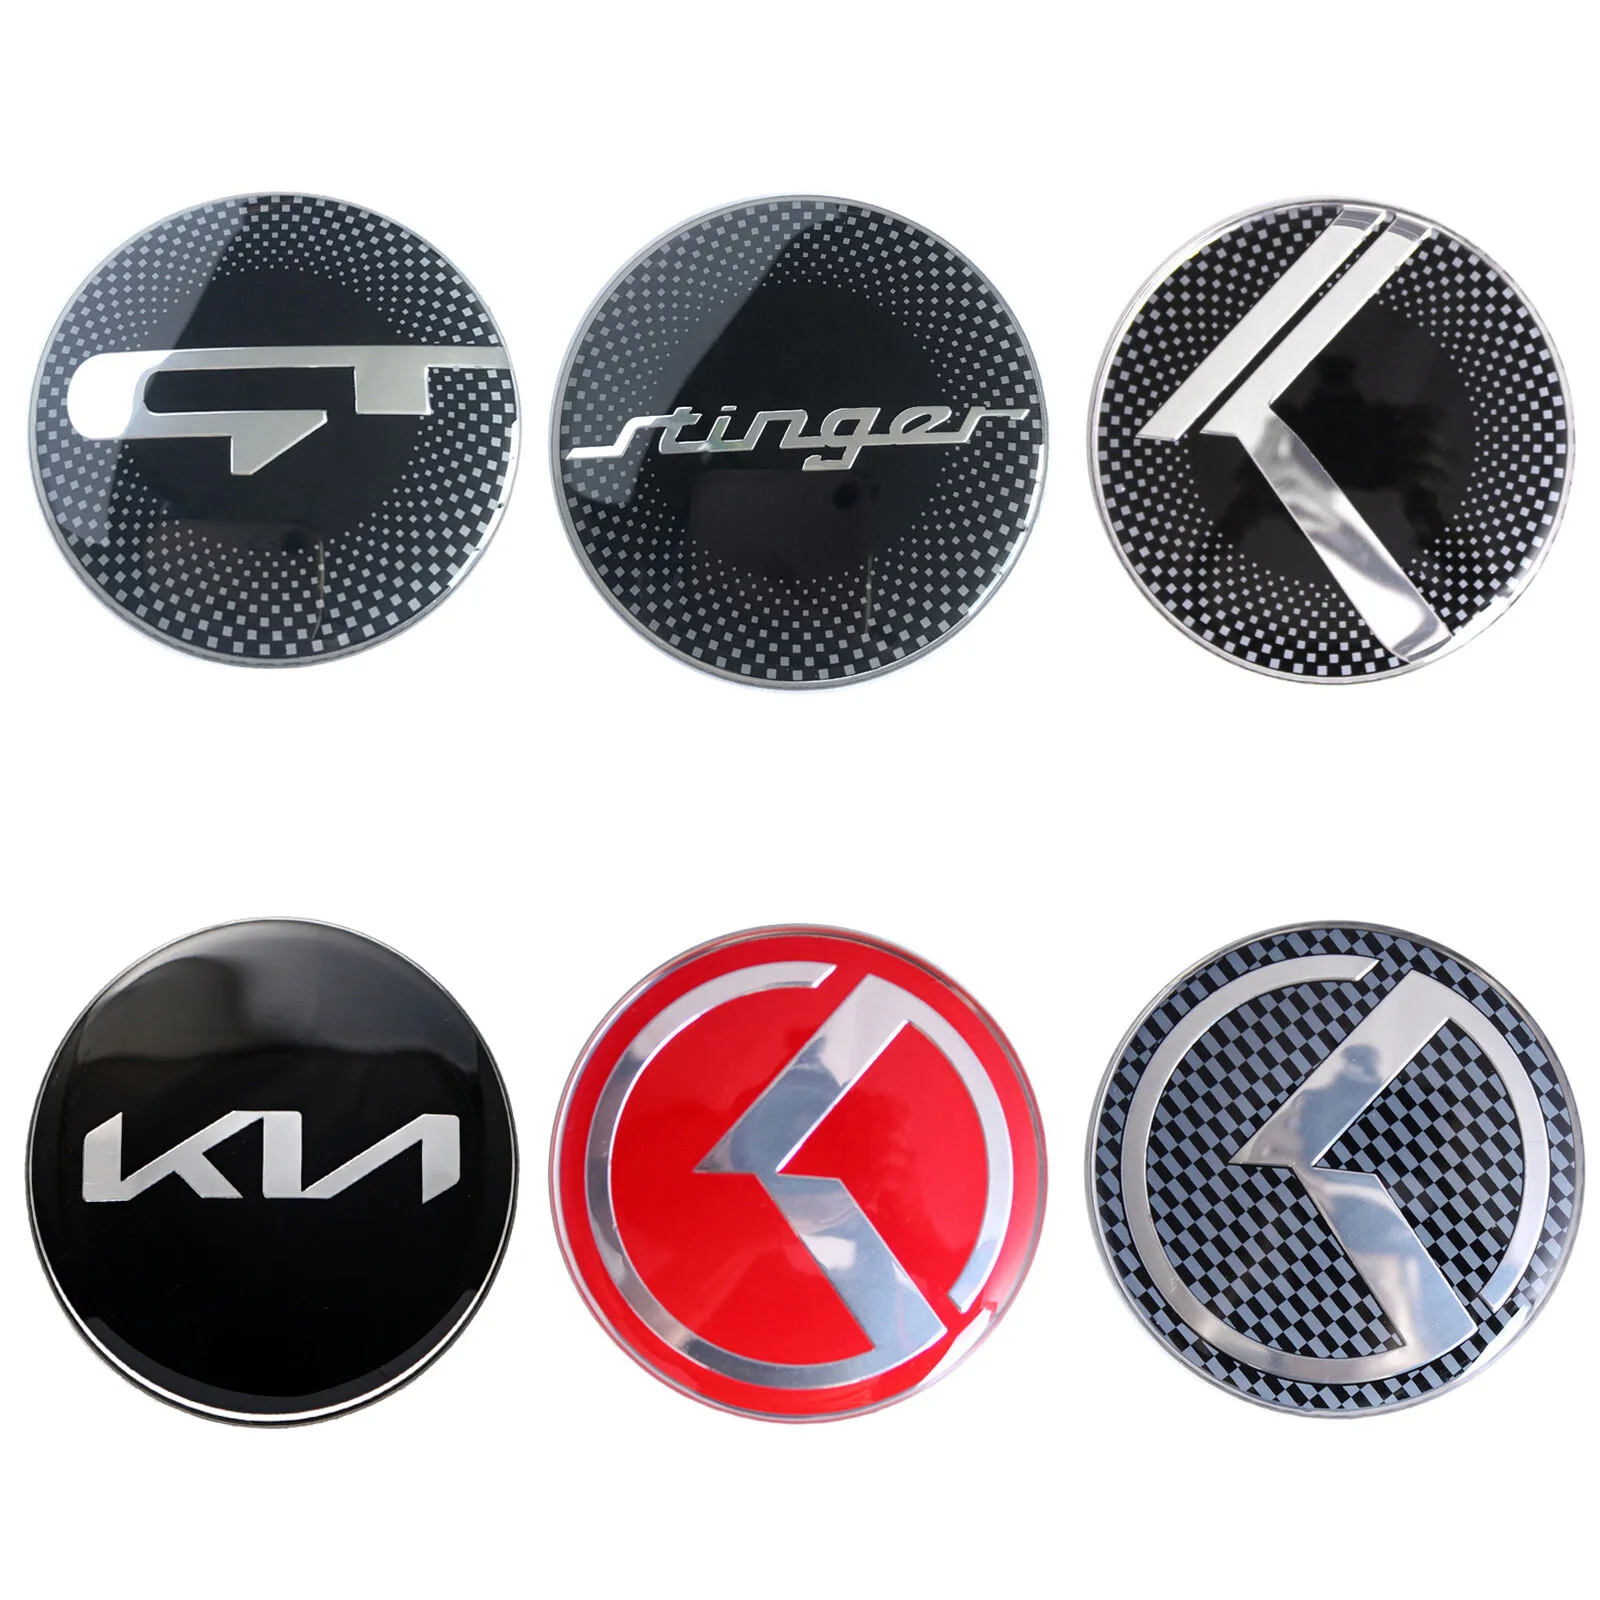 

4 шт. новая эмблема для центрального колпака колеса с логотипом Kia/GT/Stinger для Kia Forte Rio Optima K5 Sorento Cadenza и т. д.